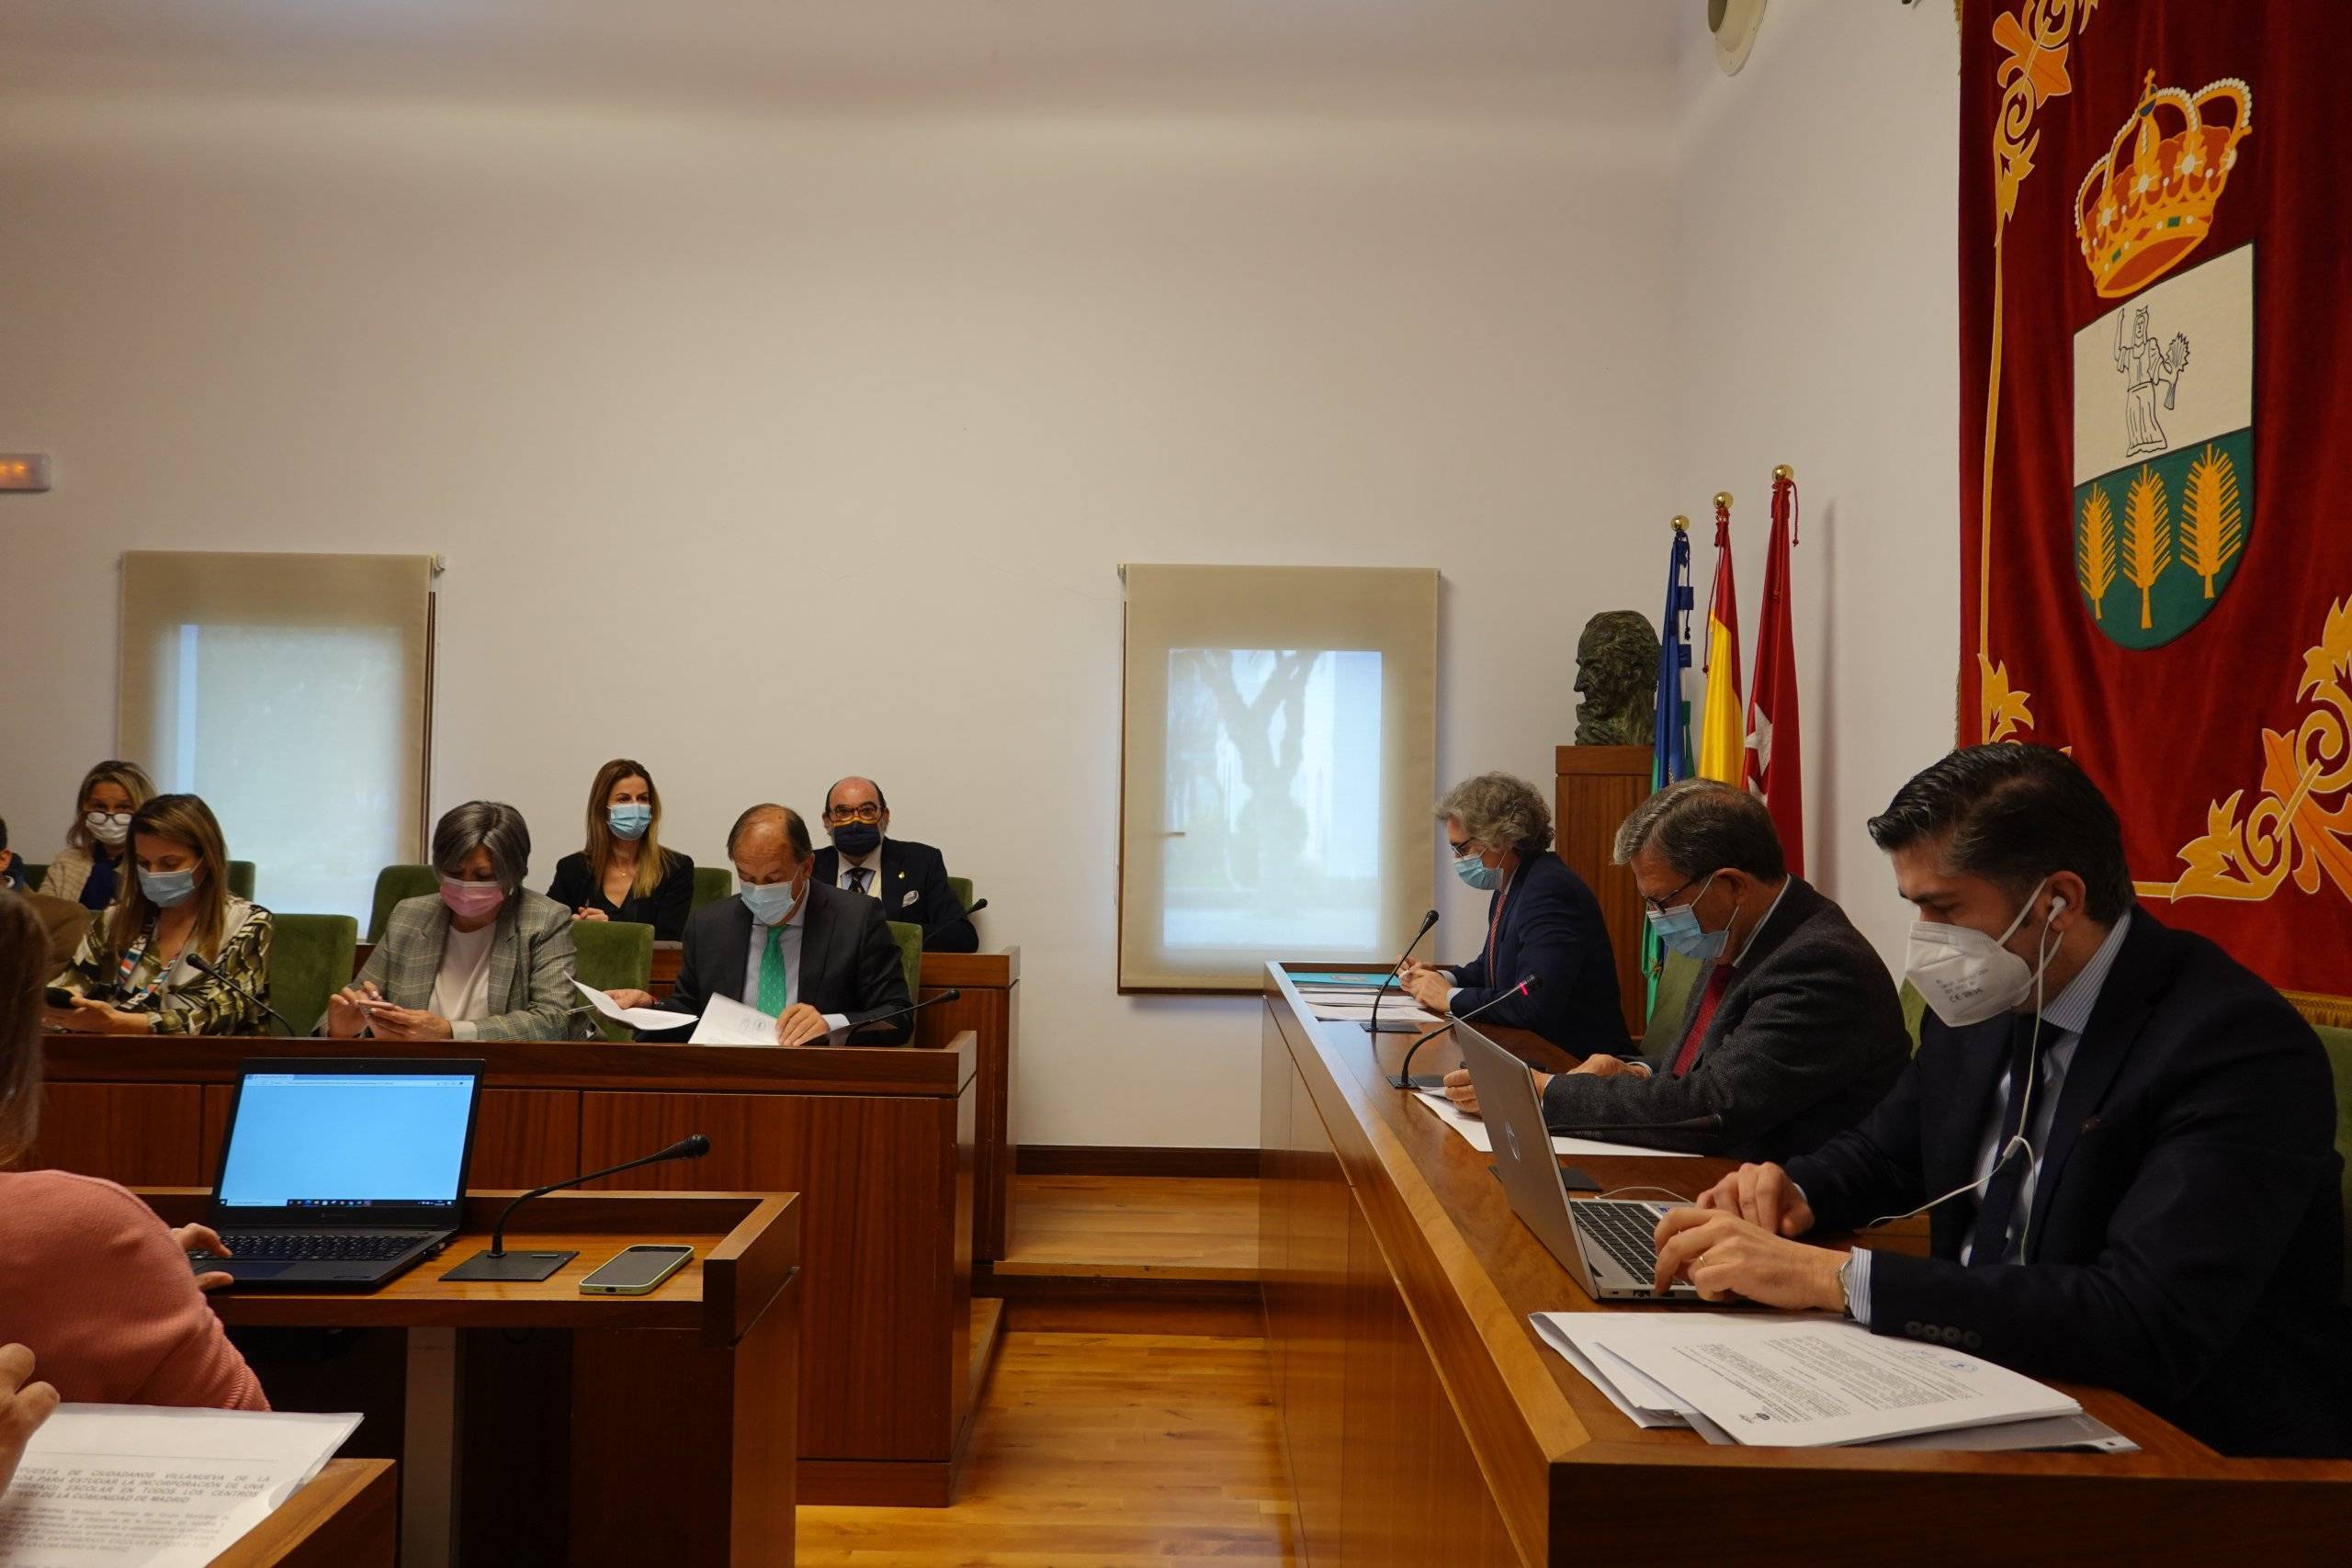 El alcalde, Luis Partida, preside la mesa del Pleno acompañado de autoridades locales.